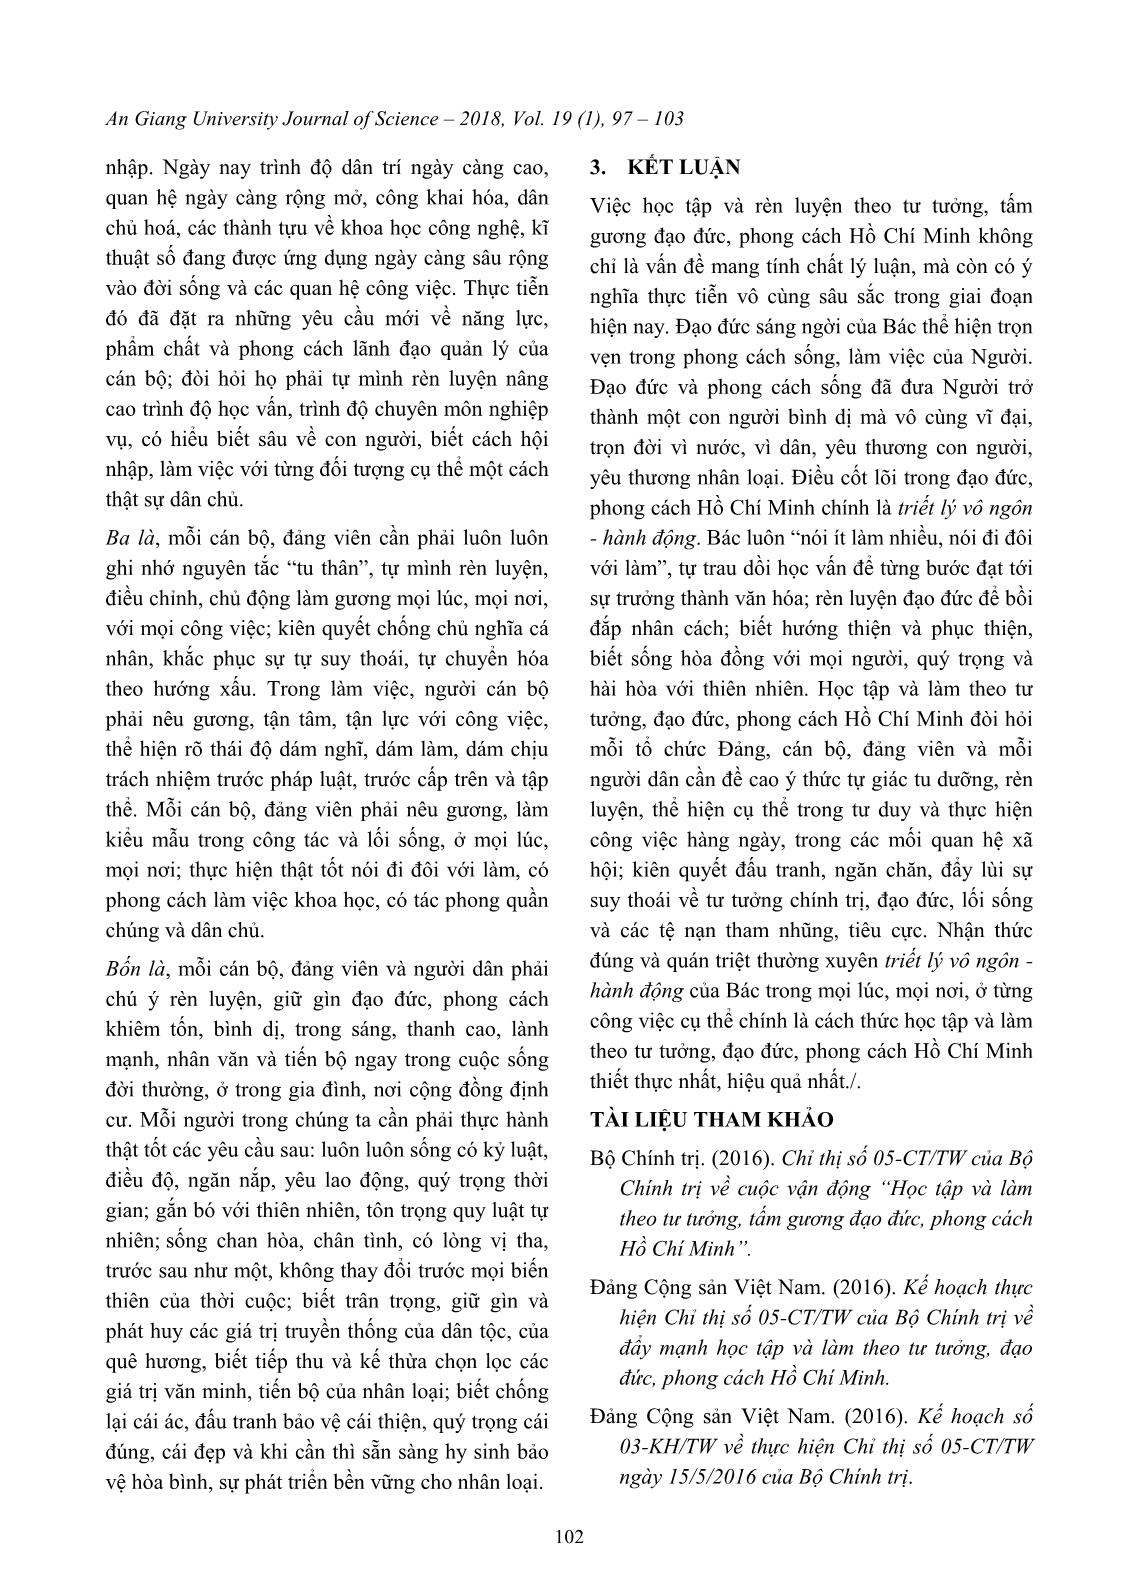 Vận dụng triết lý vô ngôn - Hành động của Bác Hồ trong triển khai “Học tập và làm theo tư tưởng, tấm gương đạo đức, phong cách Hồ Chí Minh” trang 6